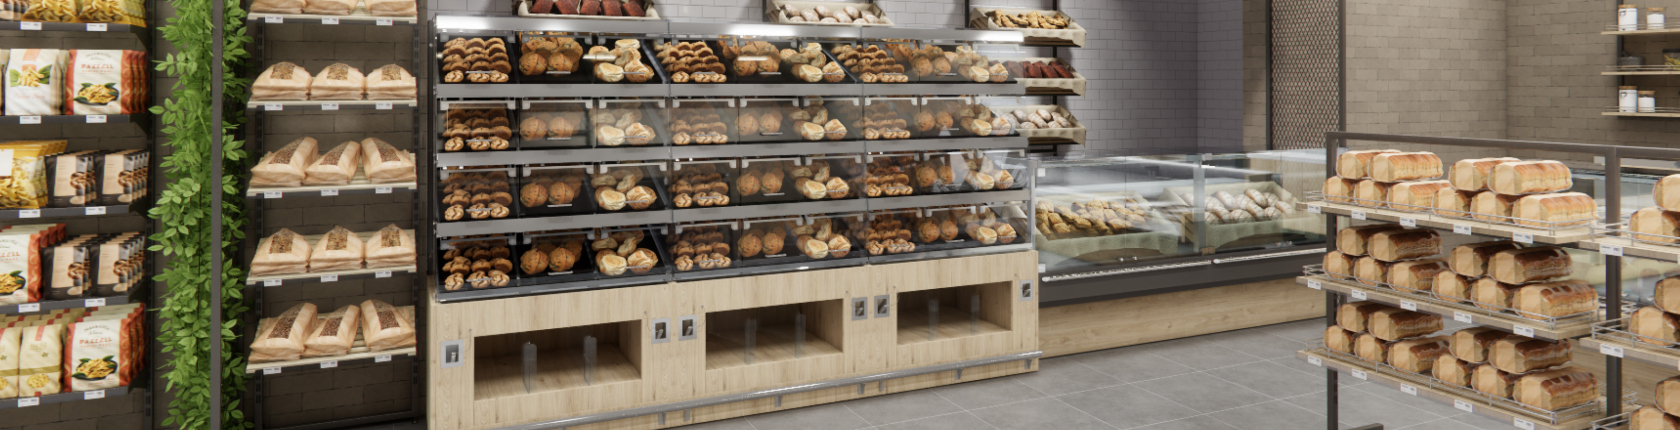 umdasch smart bakery box in a store environment